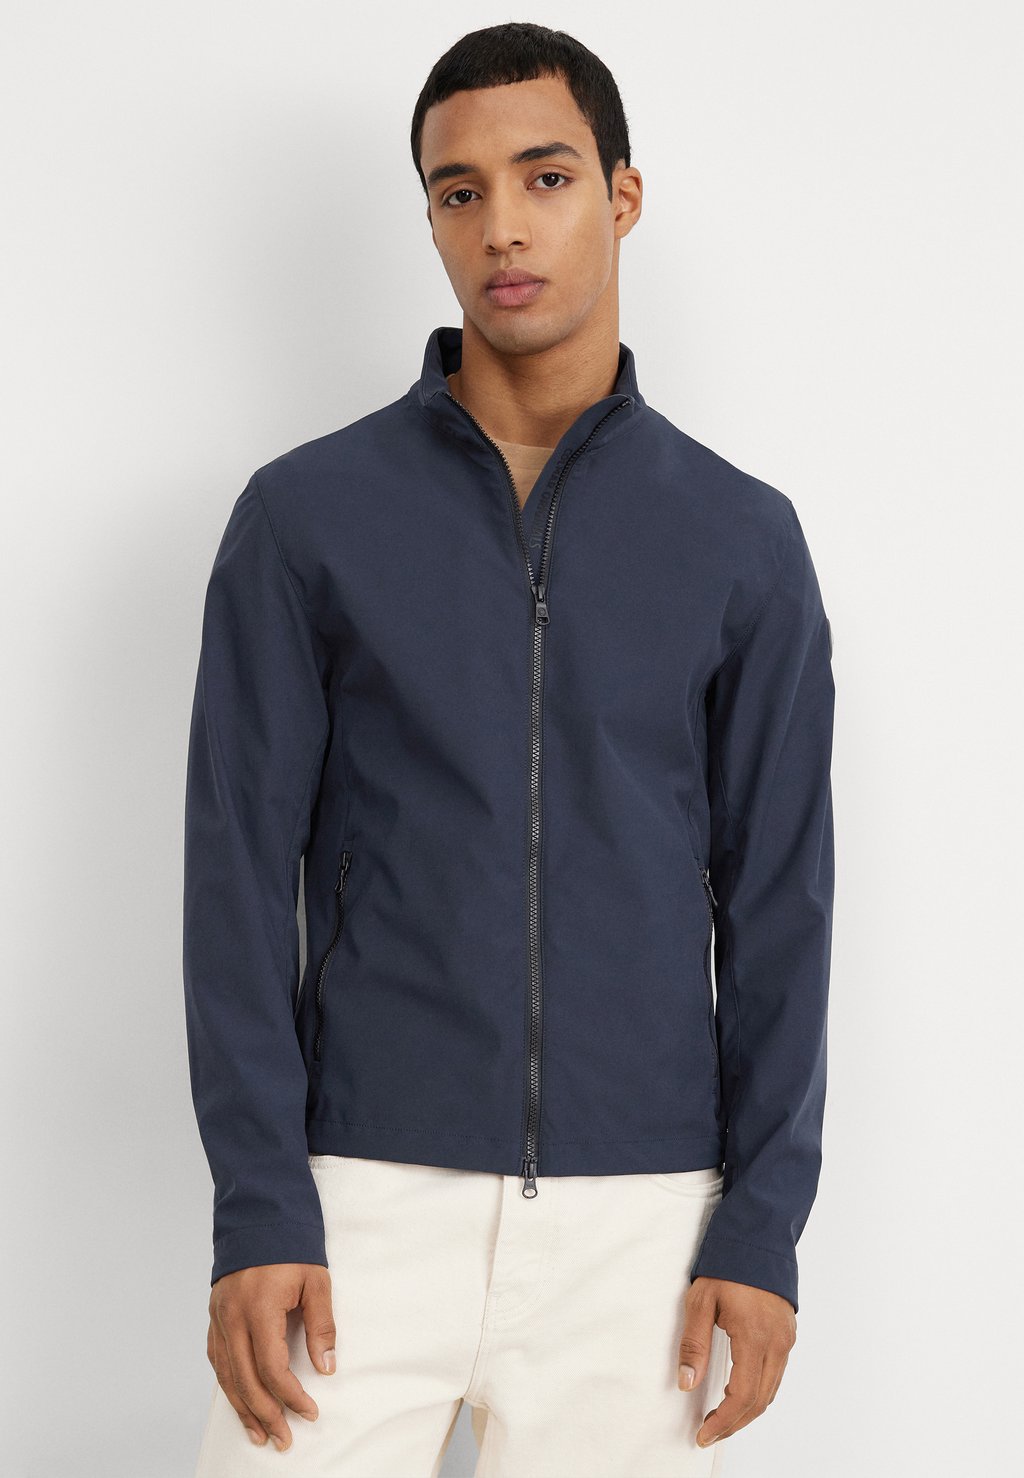 Легкая куртка Mens Jacket Colmar Originals, цвет navy blue кроссовки colmar originals dalton vice gray steel blue navy